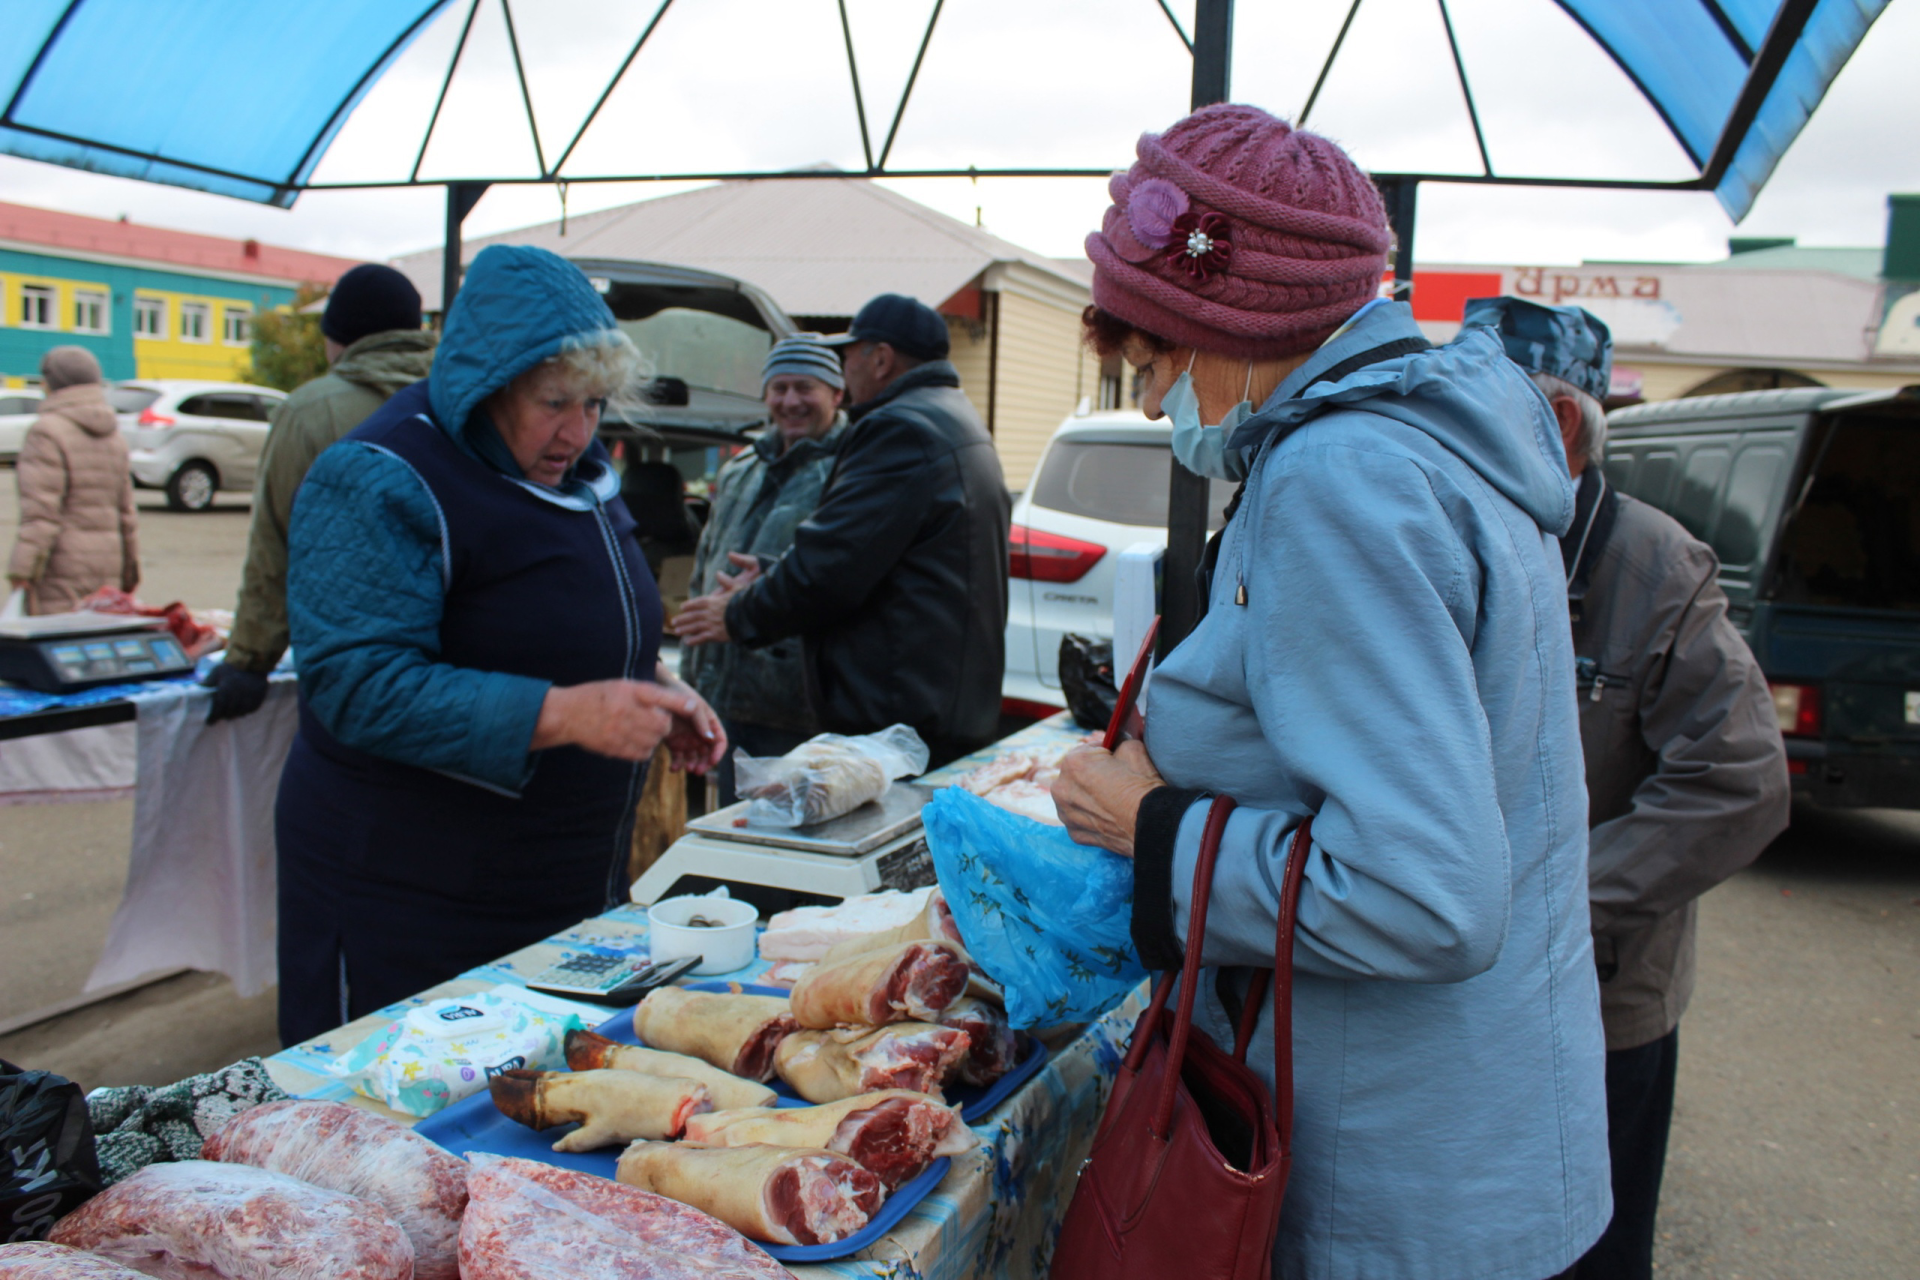 18 сентября на рыночной площади Новошешминска организовали продажу сельхозпродукции